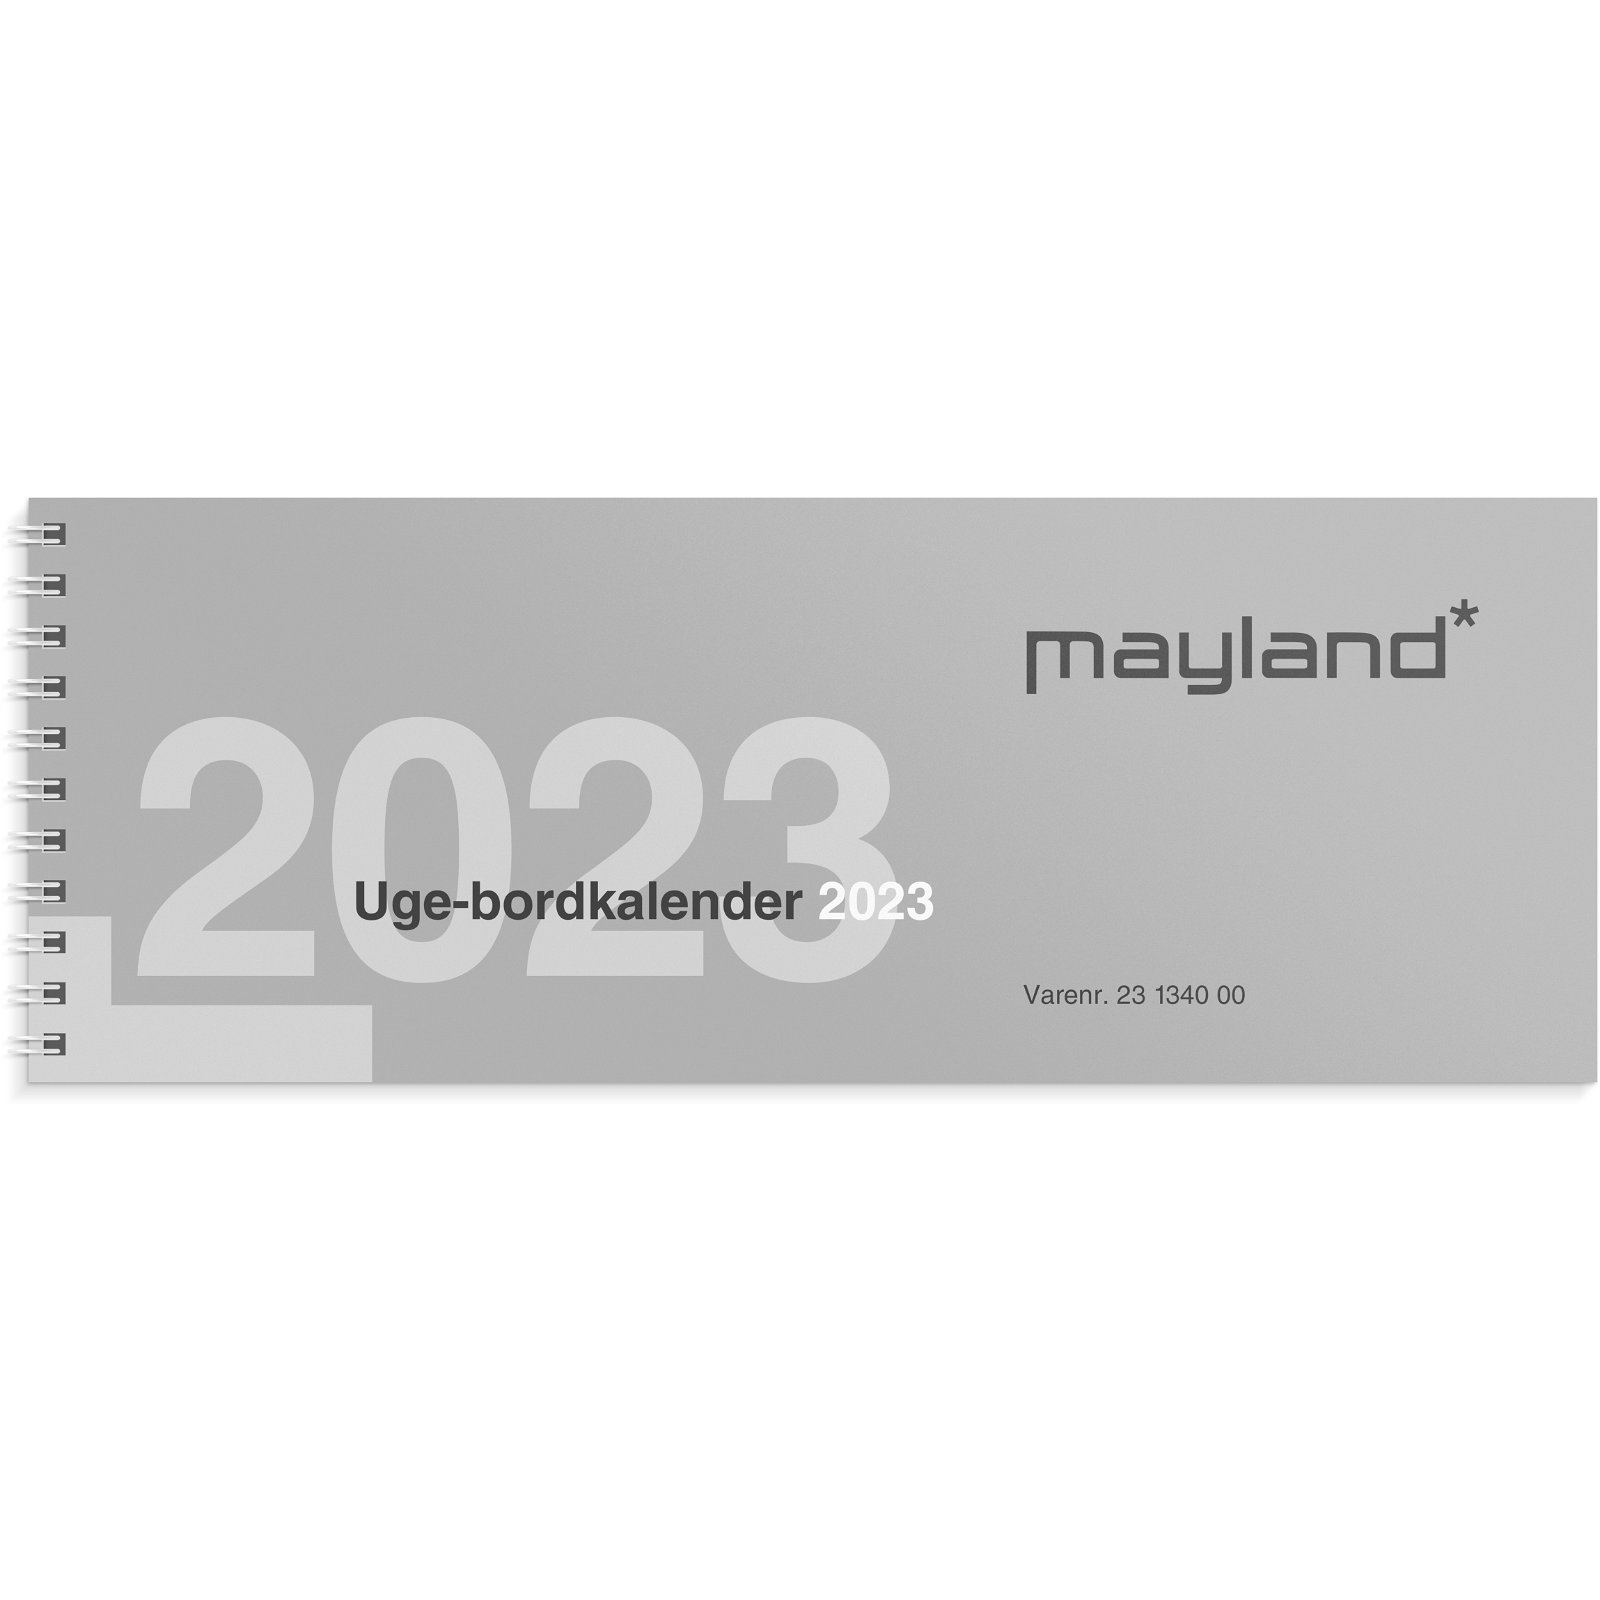 Mayland uge-bordkalender 2023